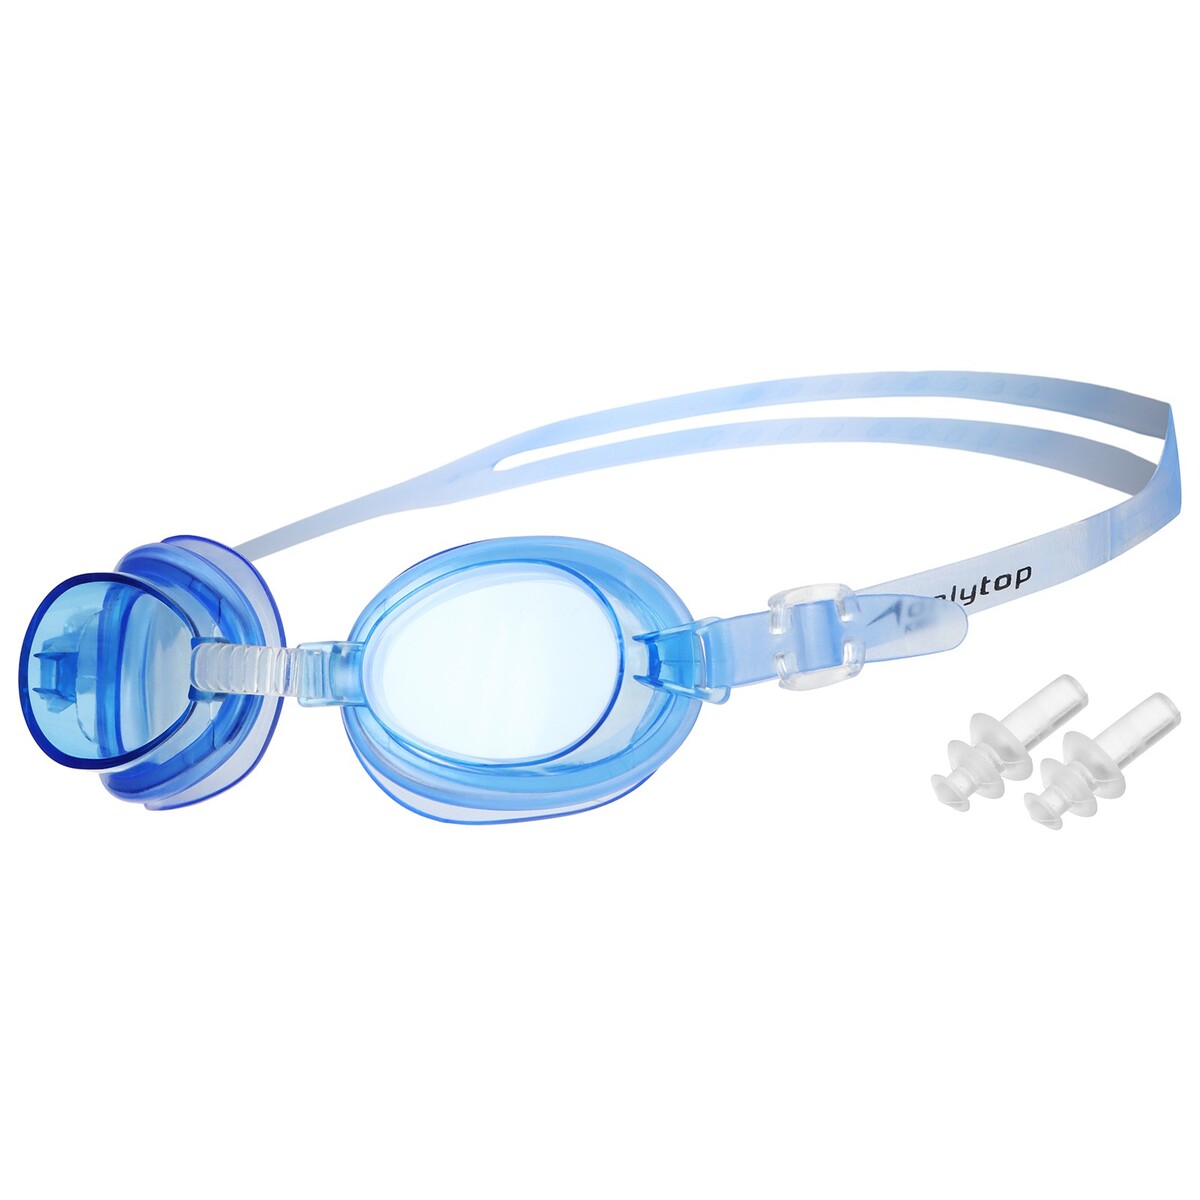 Очки для плавания детские onlytop, беруши, цвет синий очки для плавания детские onlytop беруши синий